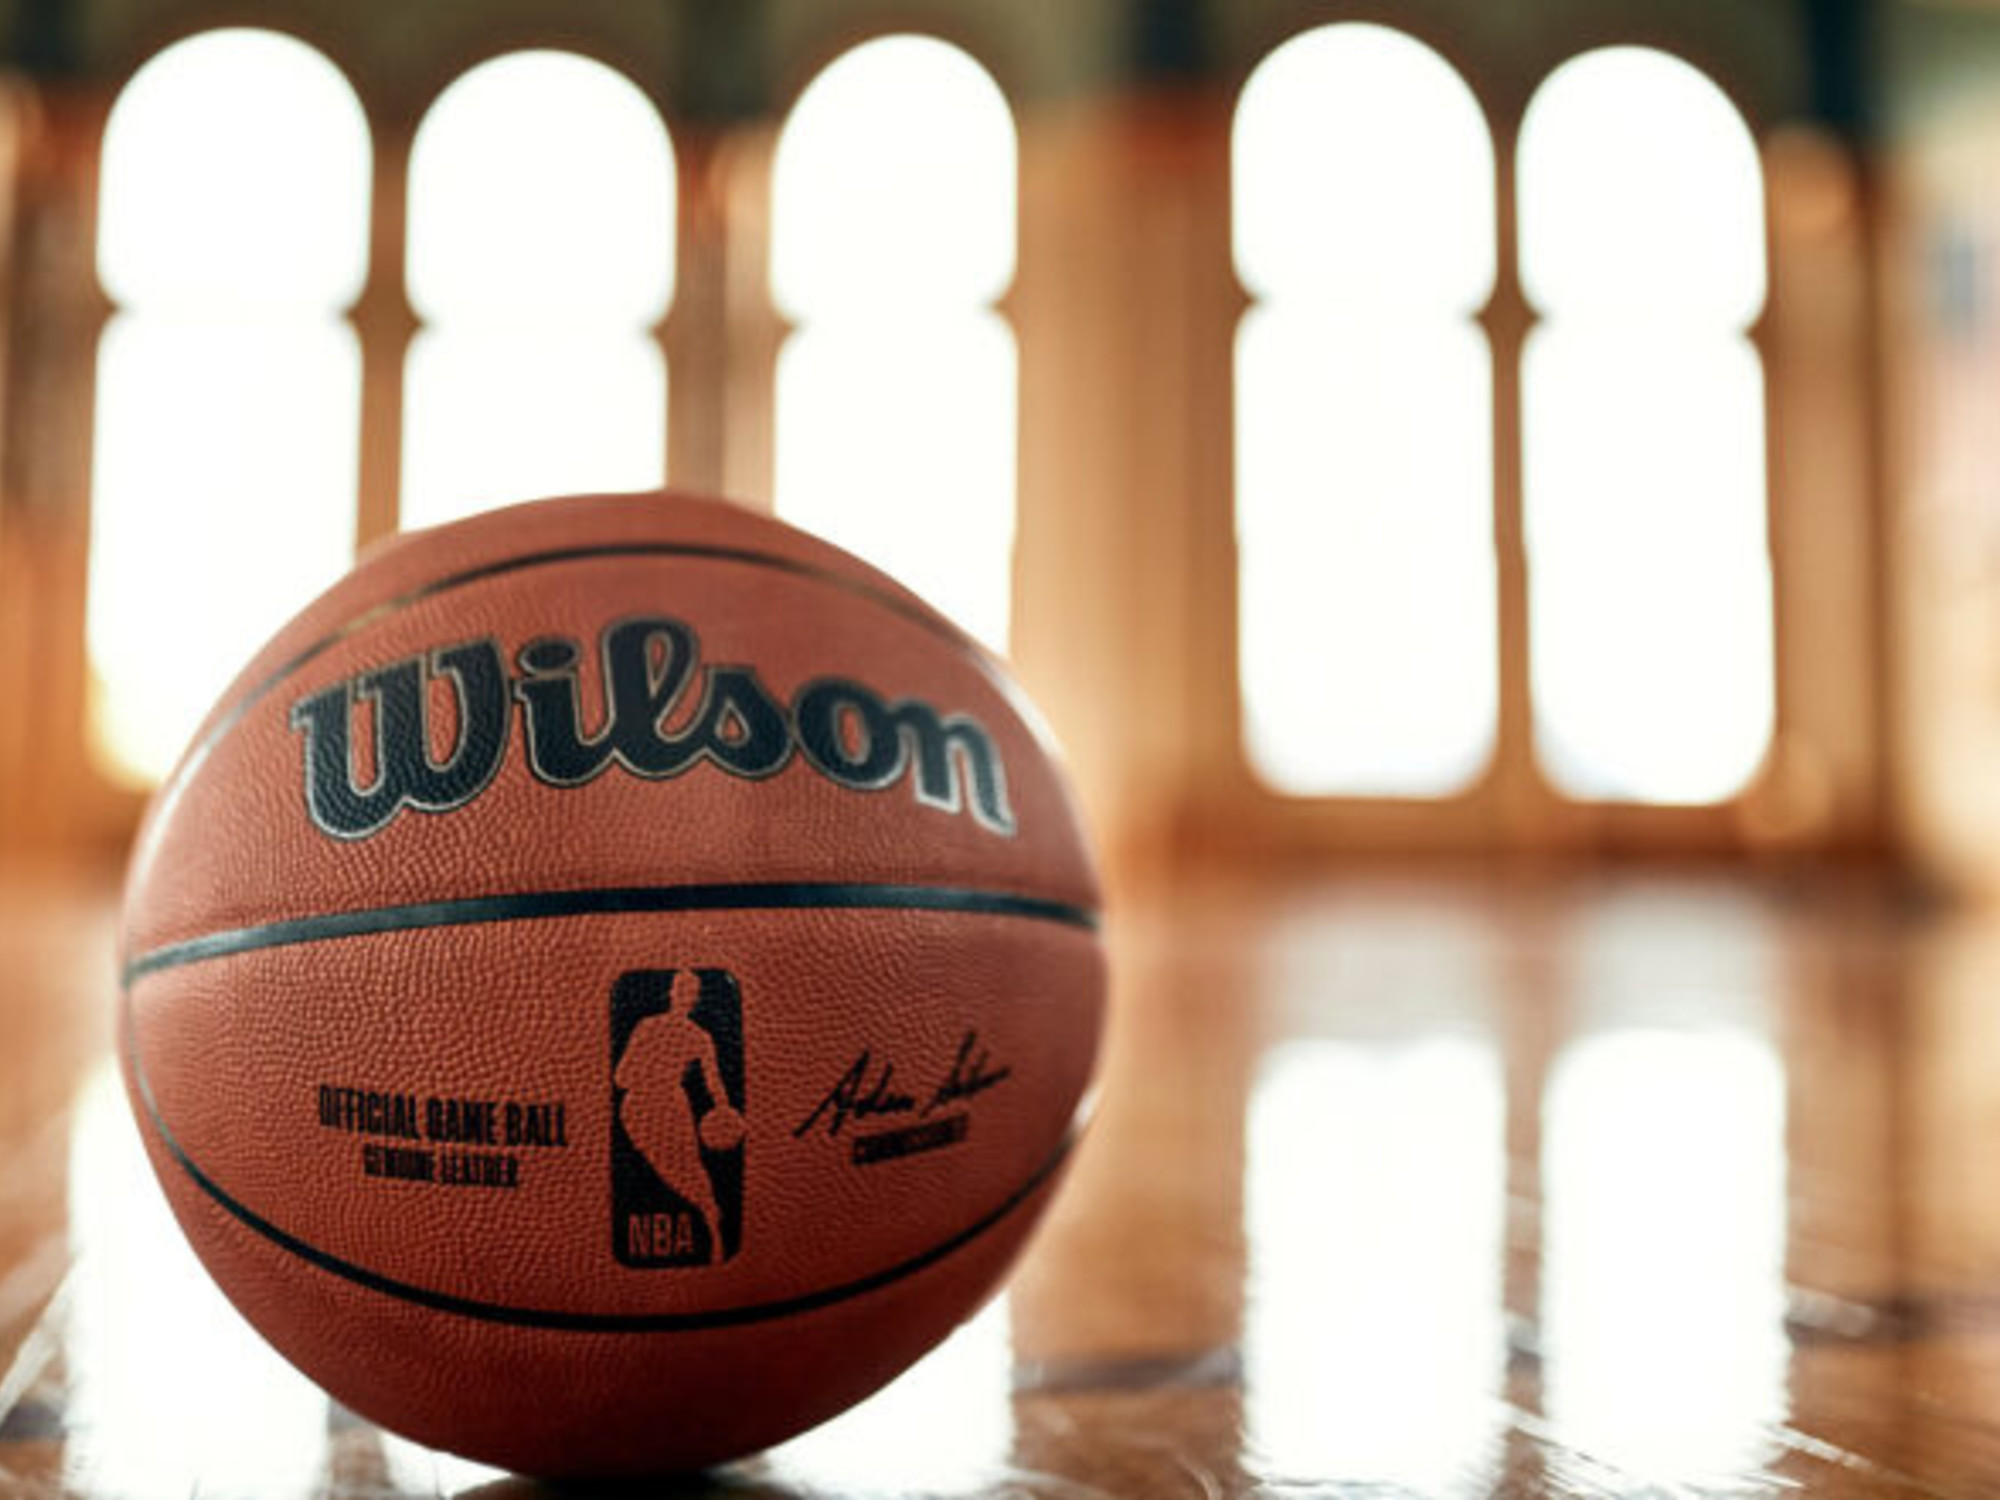 Heer Mortal Uitdrukkelijk Wilson en de NBA! De nieuwe basketballen. - Burned Sports